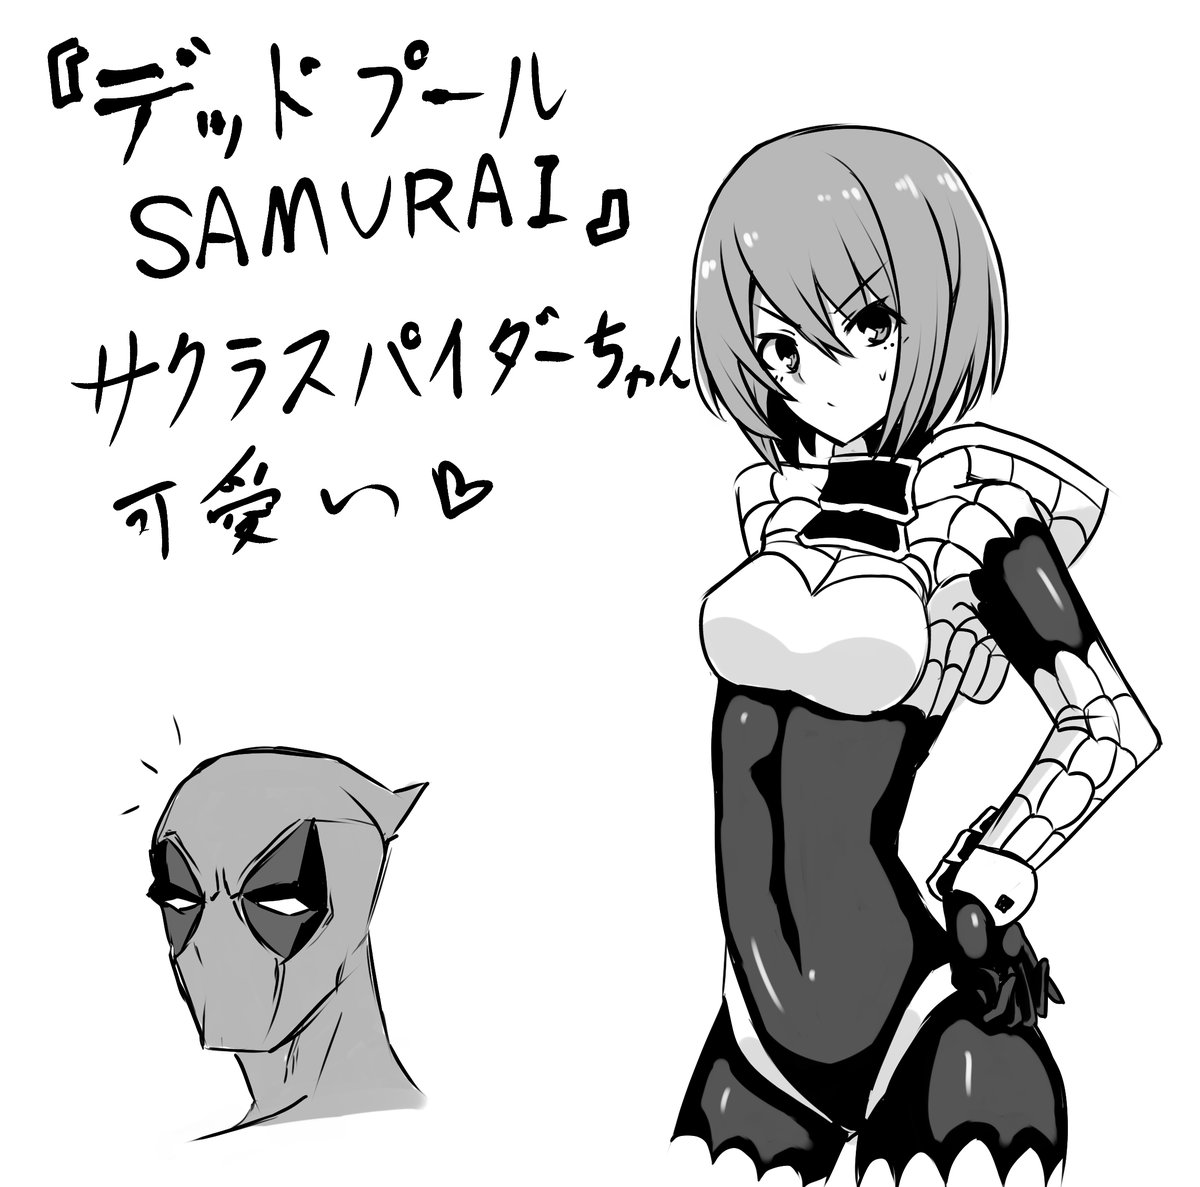 ジャンプ+にて連載中の『デッドプール:SAMURAI』が面白いというお絵描き。 